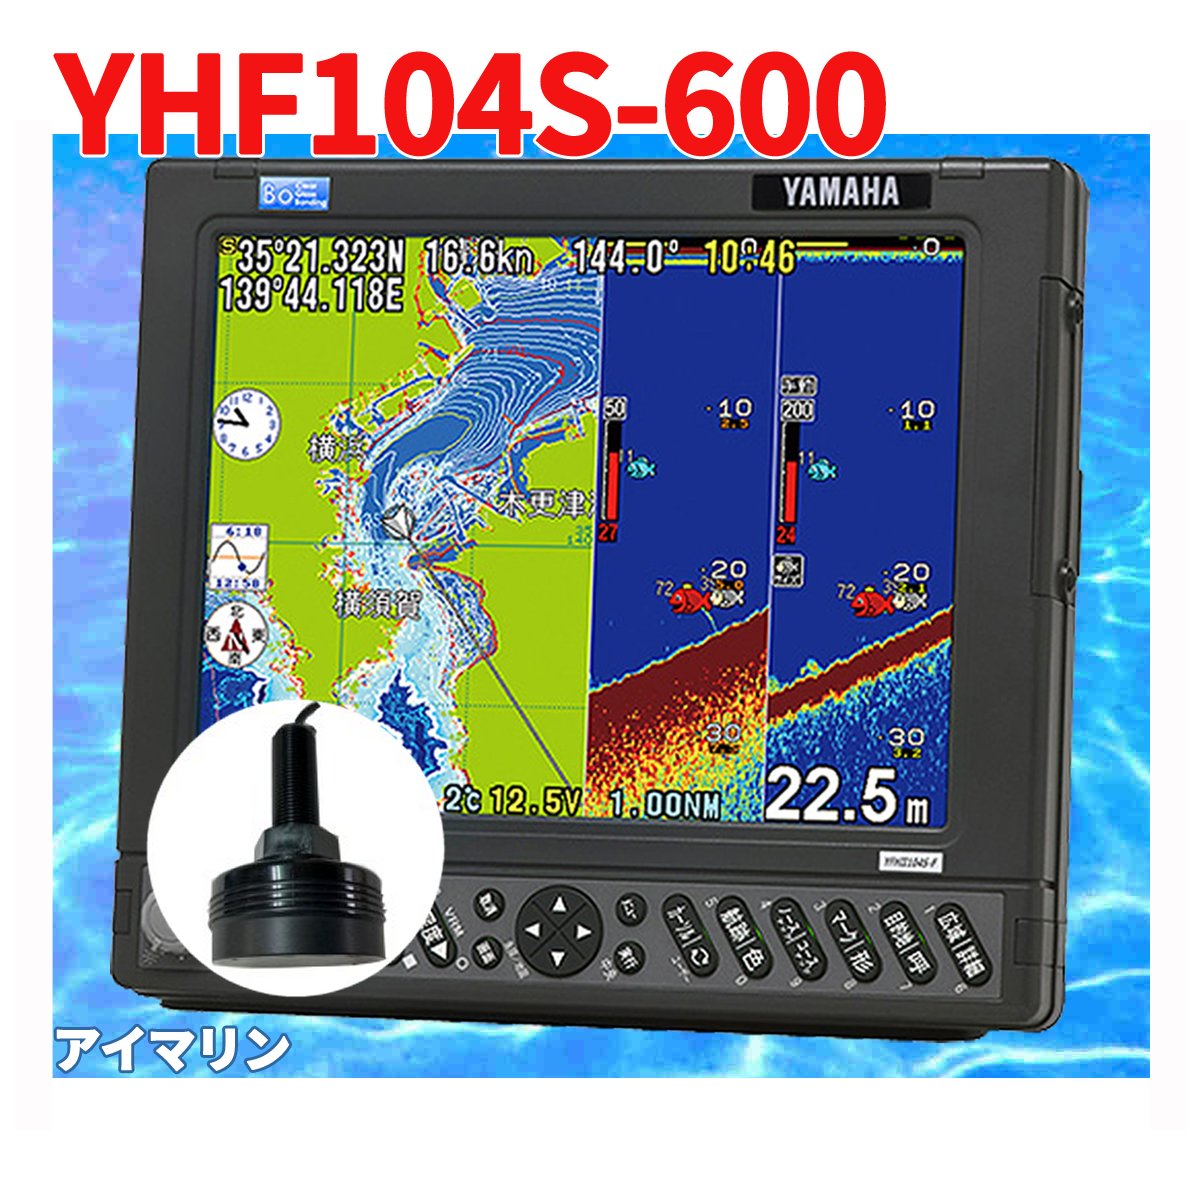 5/16 在庫あり YFHII-104S-F66i 600w TD28g 振動子付き HE-731S の ヤマハブランド YFH2-104 魚探 アンテナ内蔵 HONDEX ホンデックス